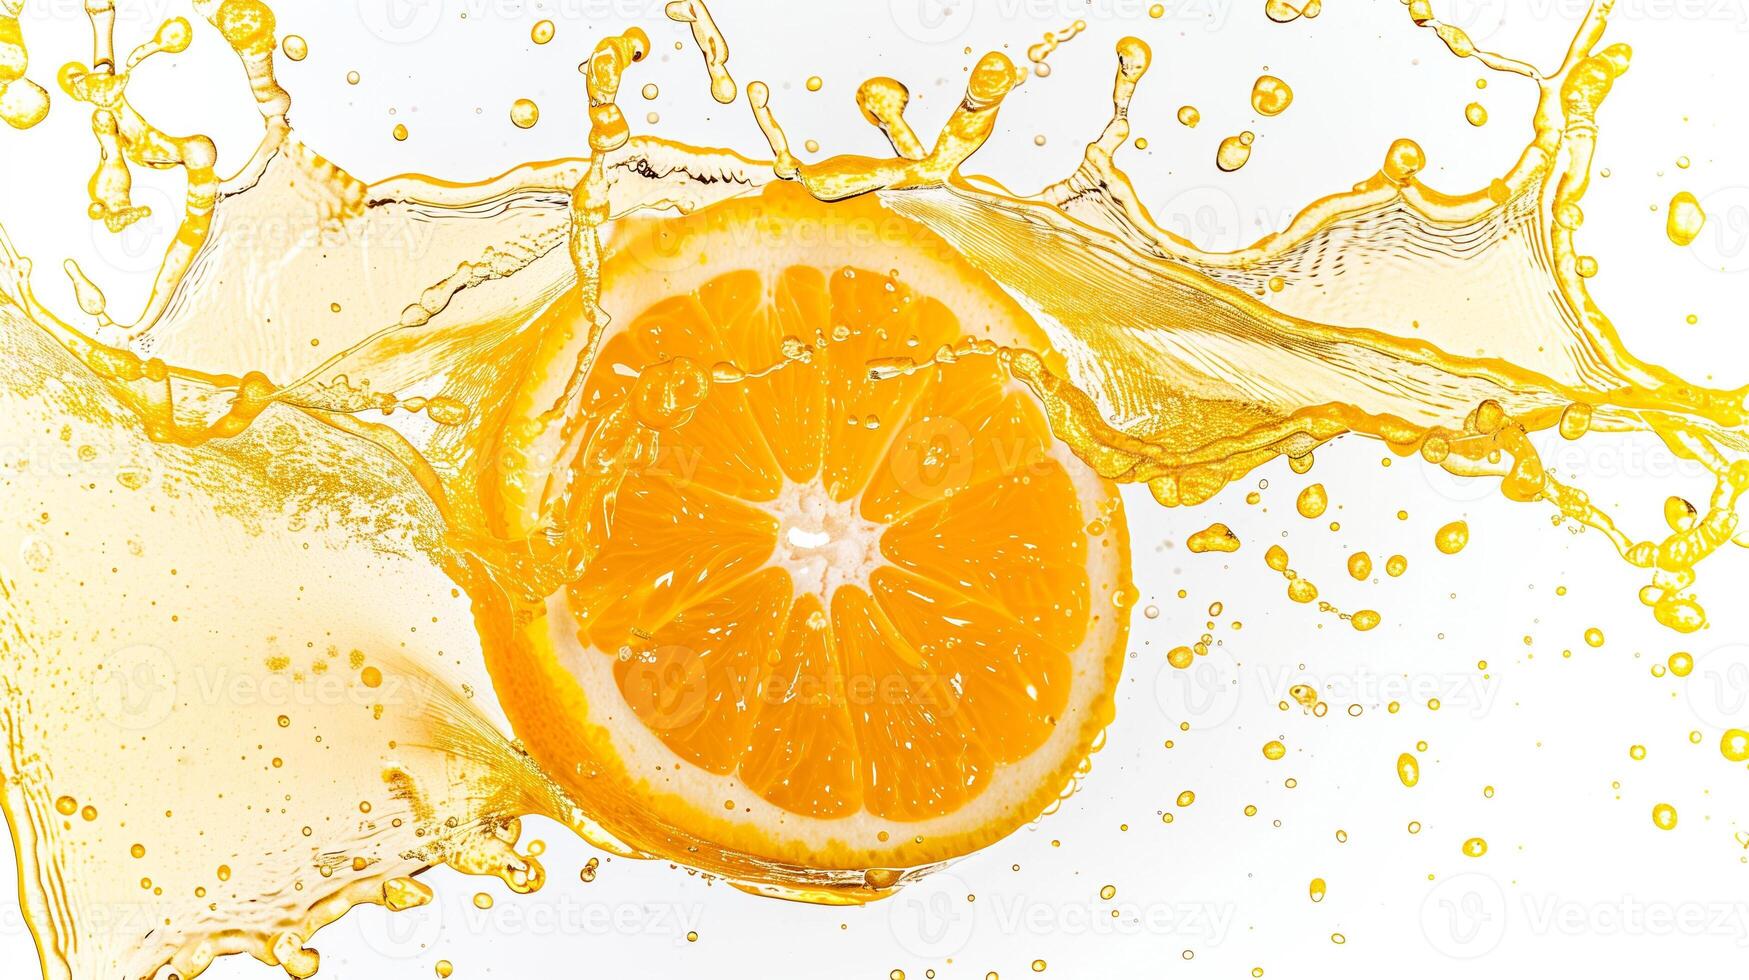 ett konstnärlig stänk av orange juice med en enda, perfekt skiva av orange frysta i i luften, uppsättning mot en skarp vit bakgrund för hög kontrast foto